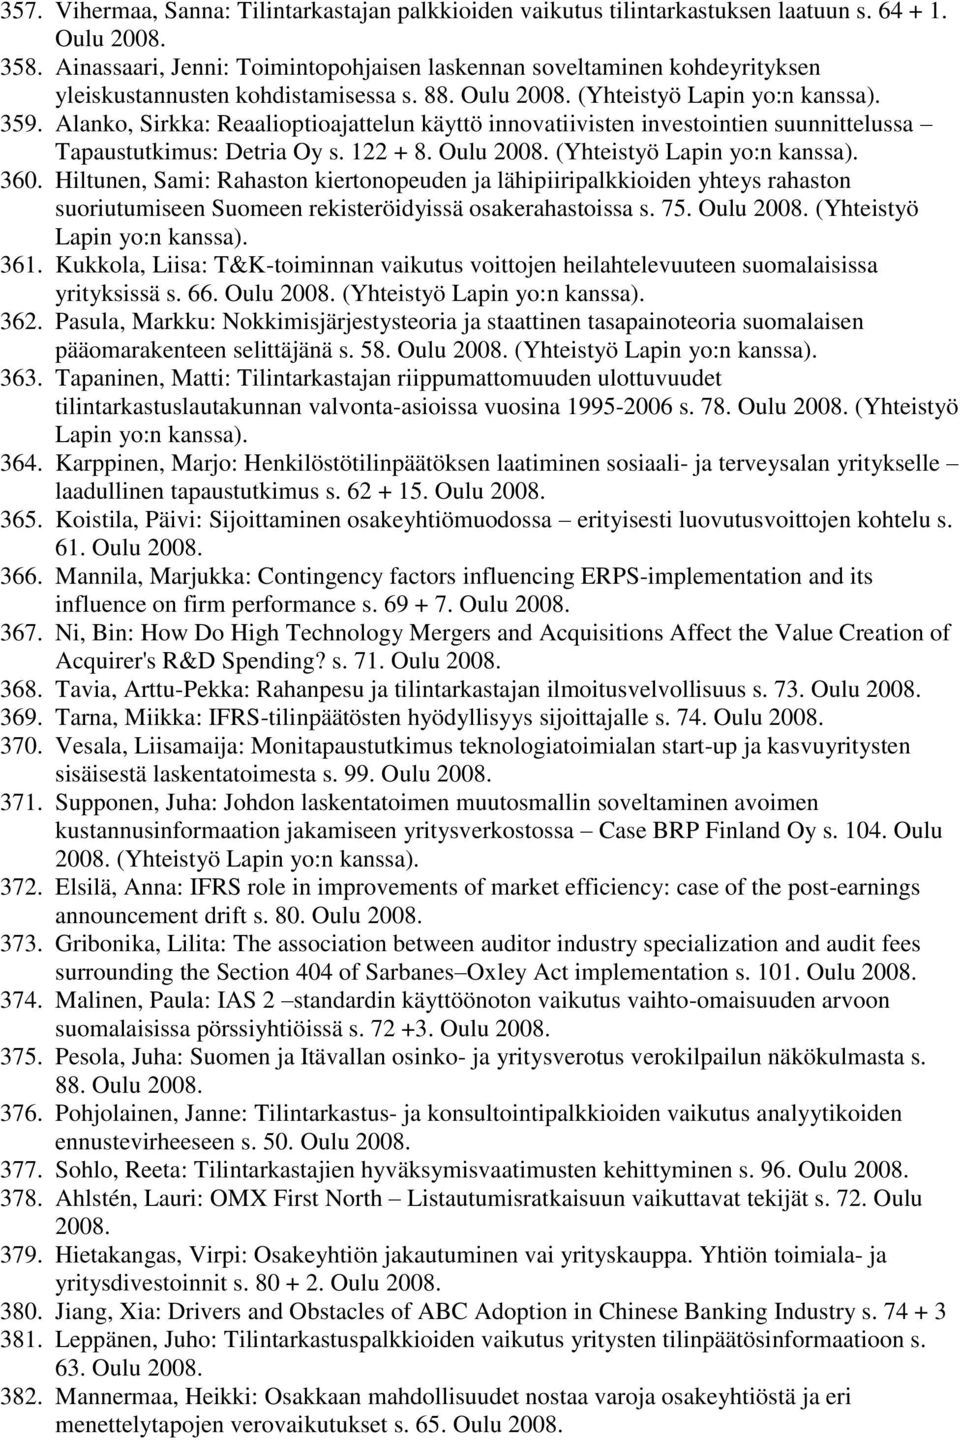 Alanko, Sirkka: Reaalioptioajattelun käyttö innovatiivisten investointien suunnittelussa Tapaustutkimus: Detria Oy s. 122 + 8. Oulu 2008. (Yhteistyö Lapin yo:n kanssa). 360.